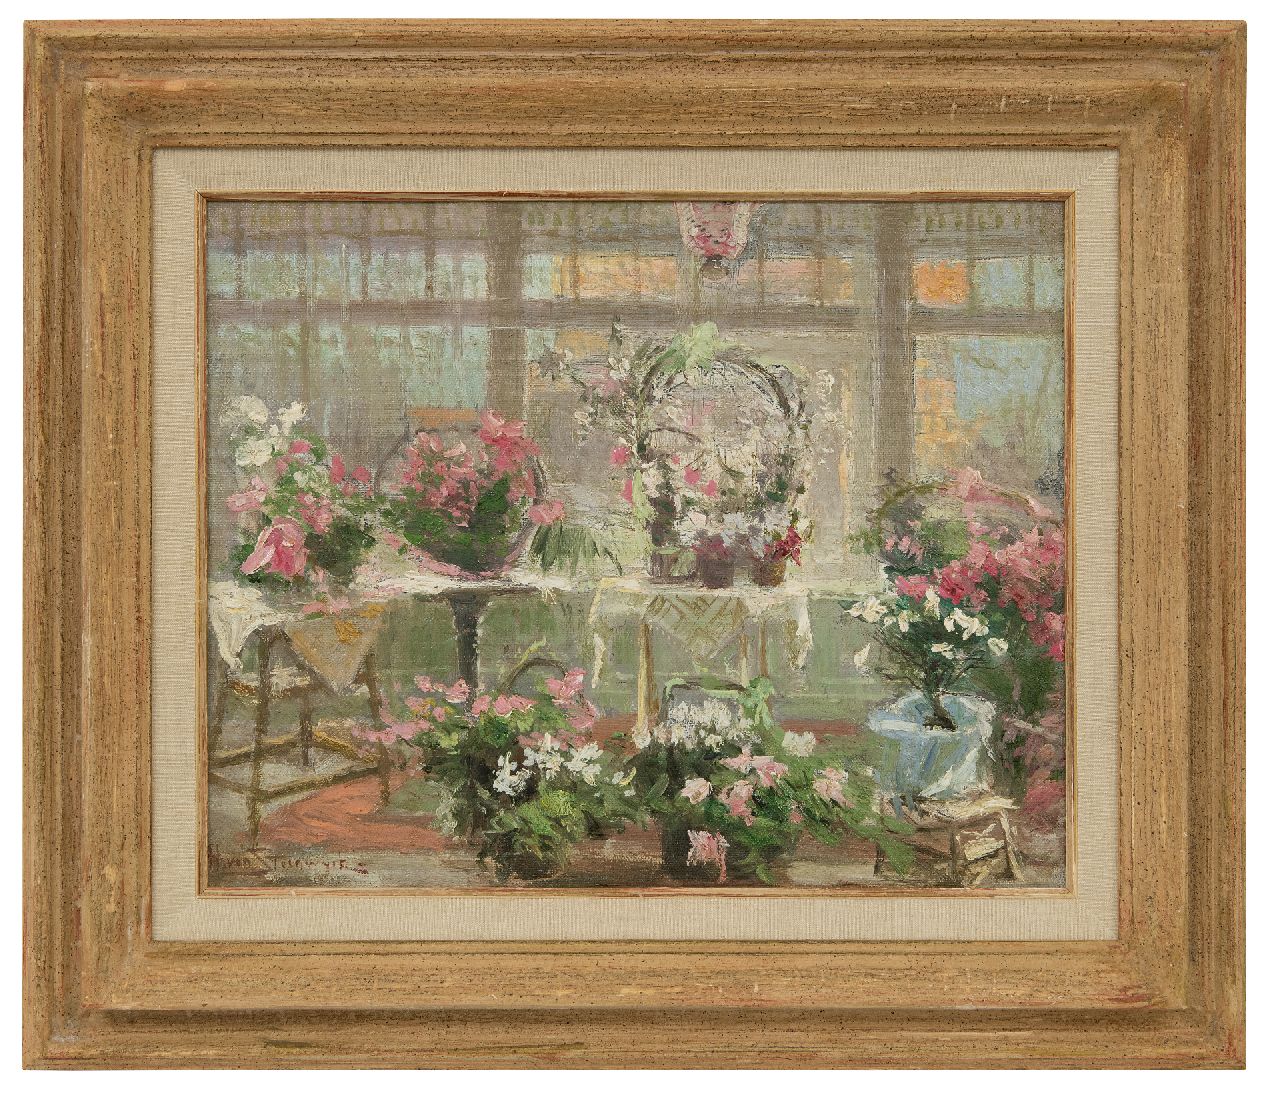 Steenwijk H. van | Hendrik van Steenwijk | Schilderijen te koop aangeboden | Serre met bloeiende planten, olieverf op doek op paneel 29,9 x 36,8 cm, gesigneerd linksonder